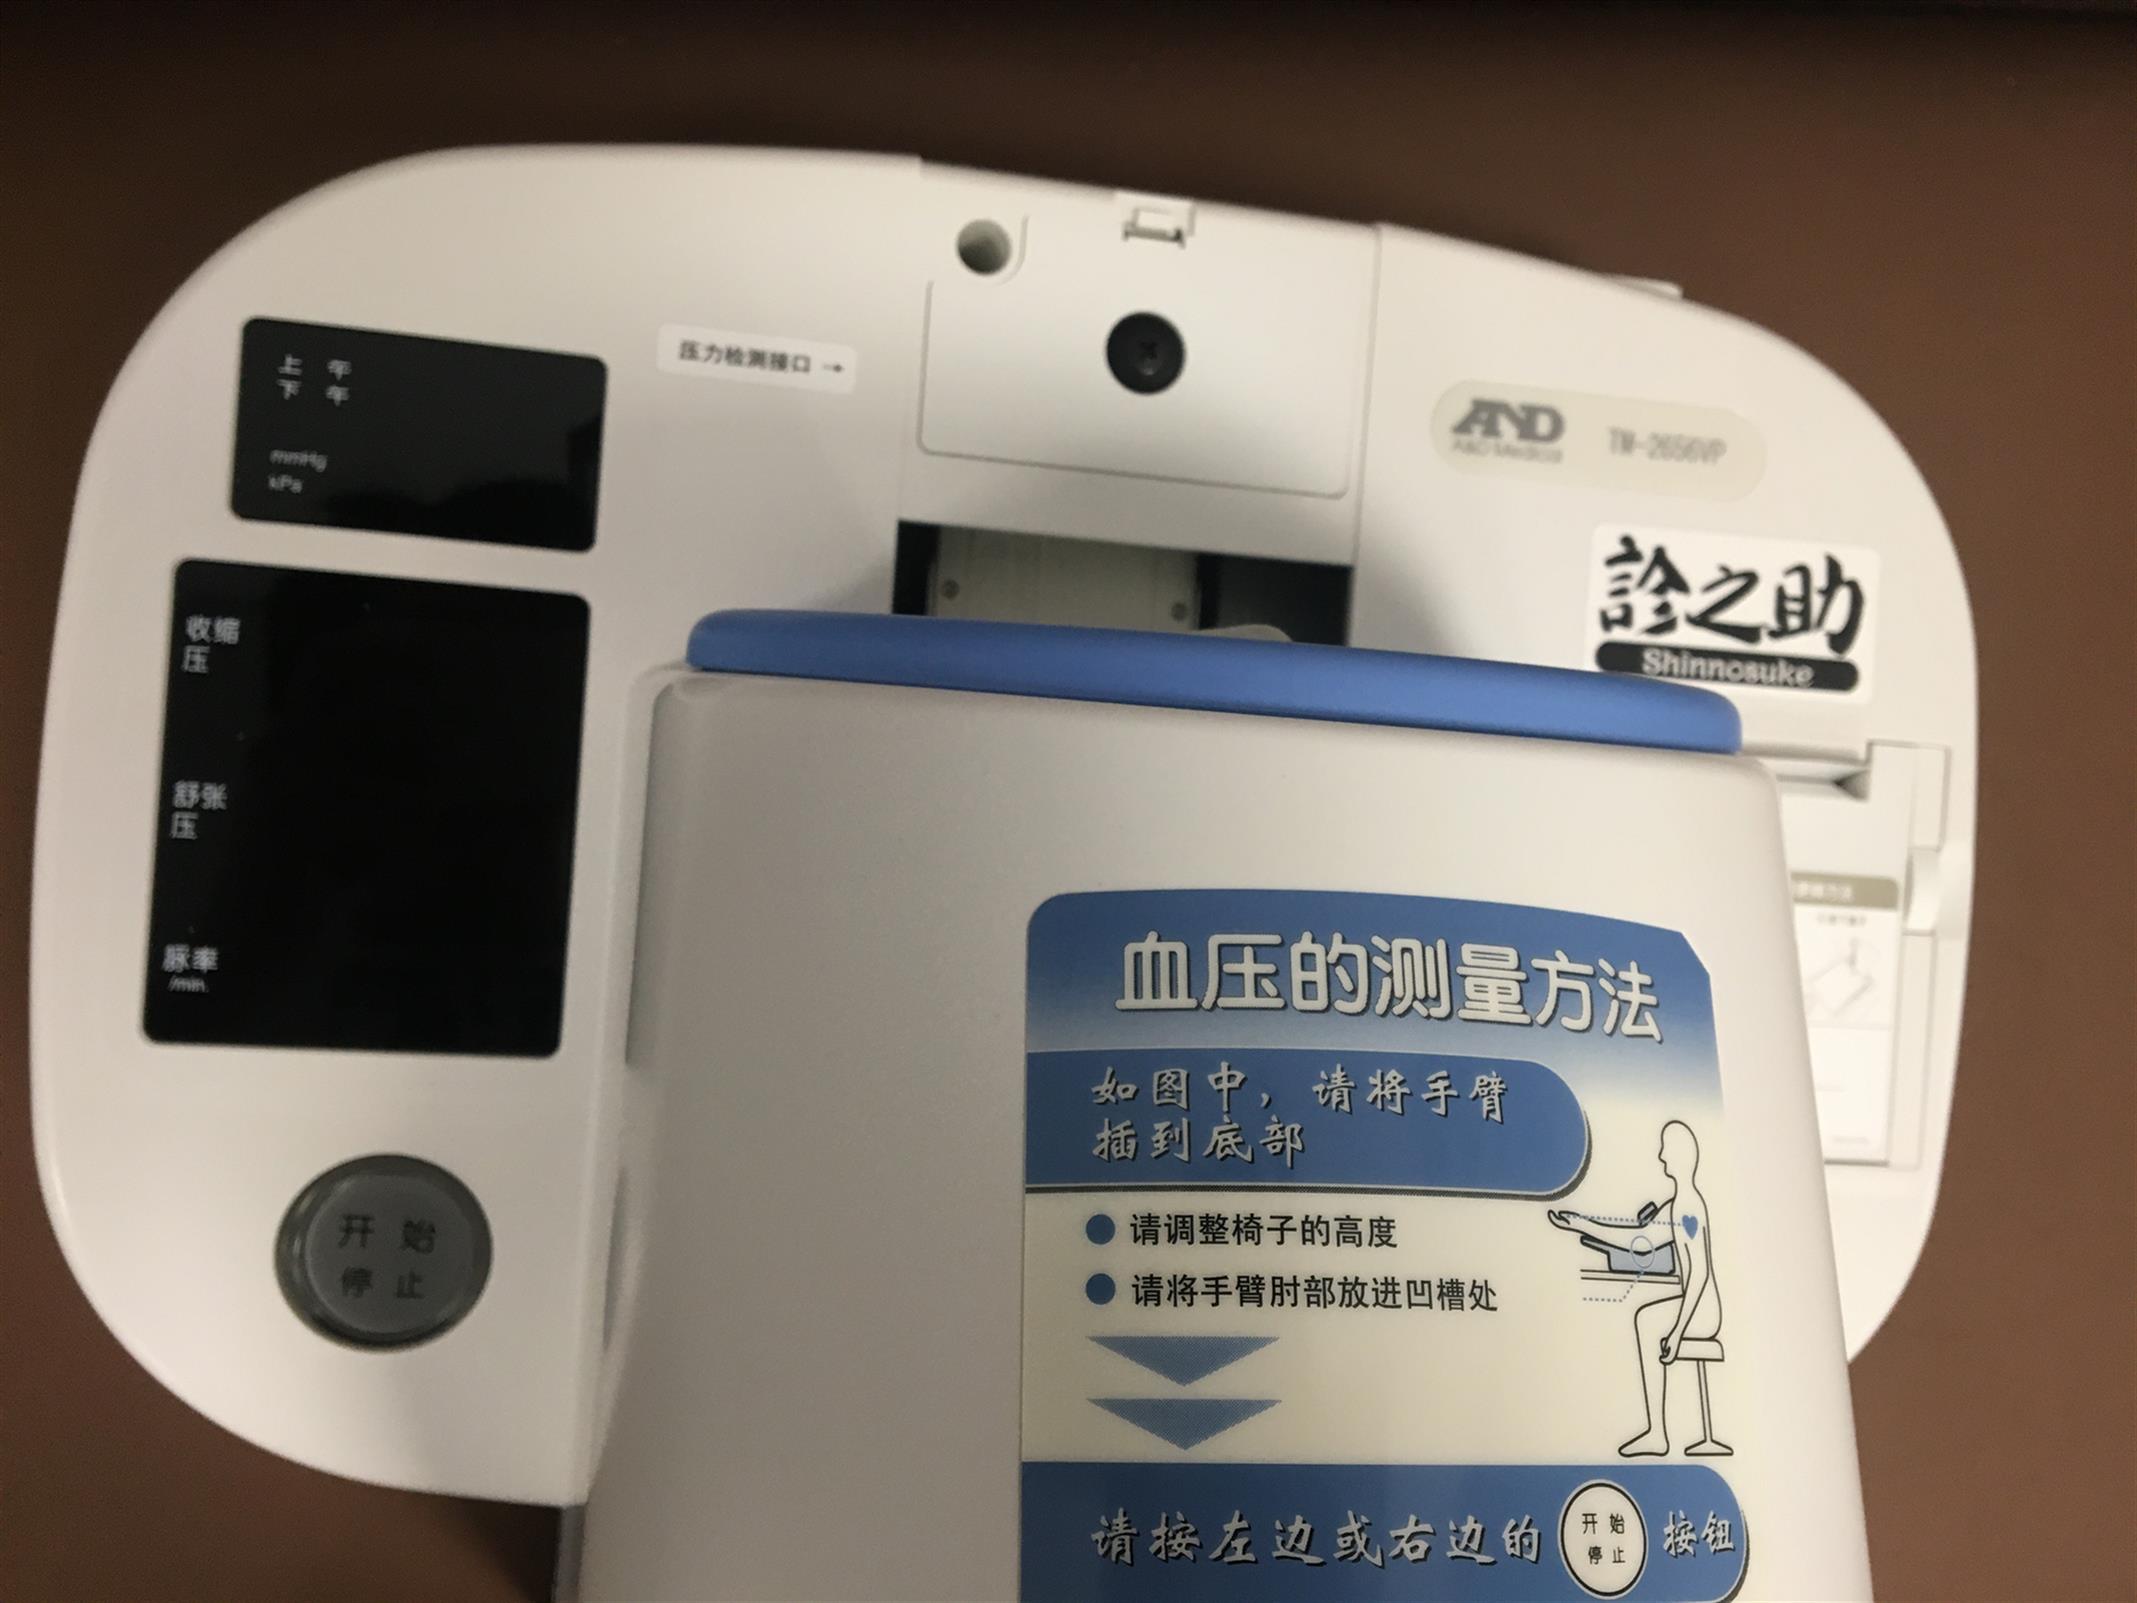 北京TM-2656VP日本AND全自动血压计